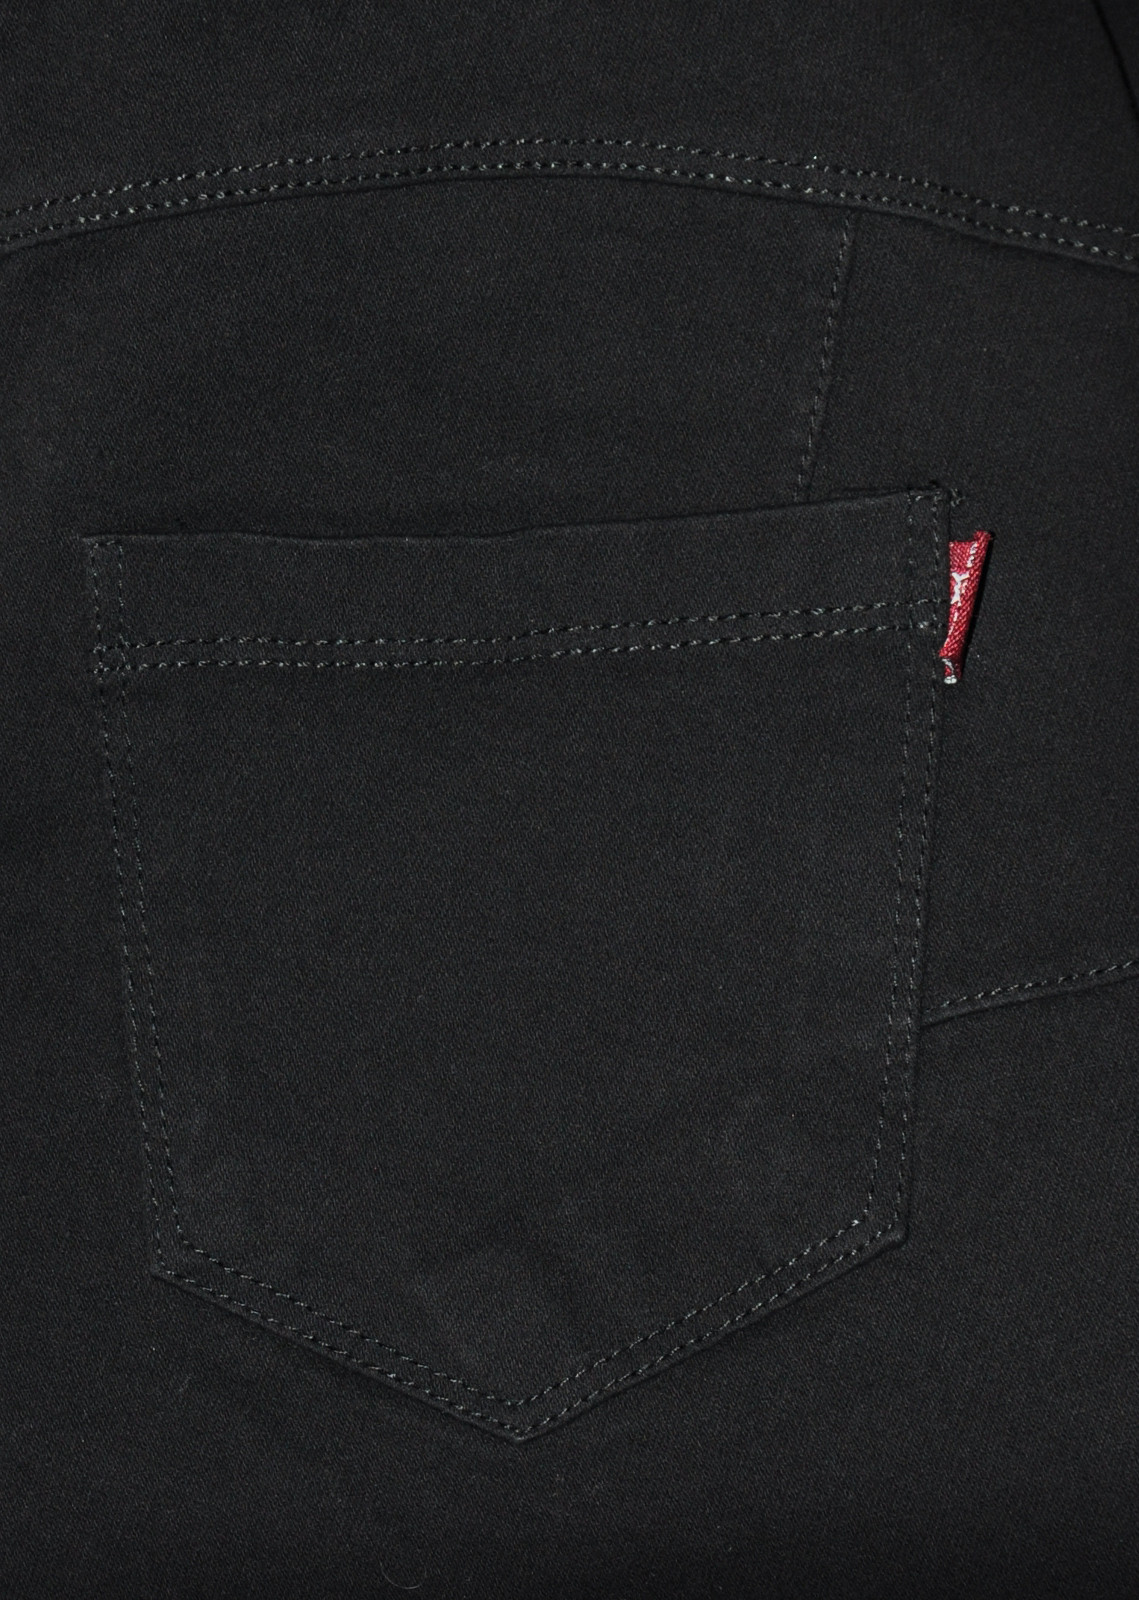 Dámské kalhoty jeans L model 7063093 - Gatta